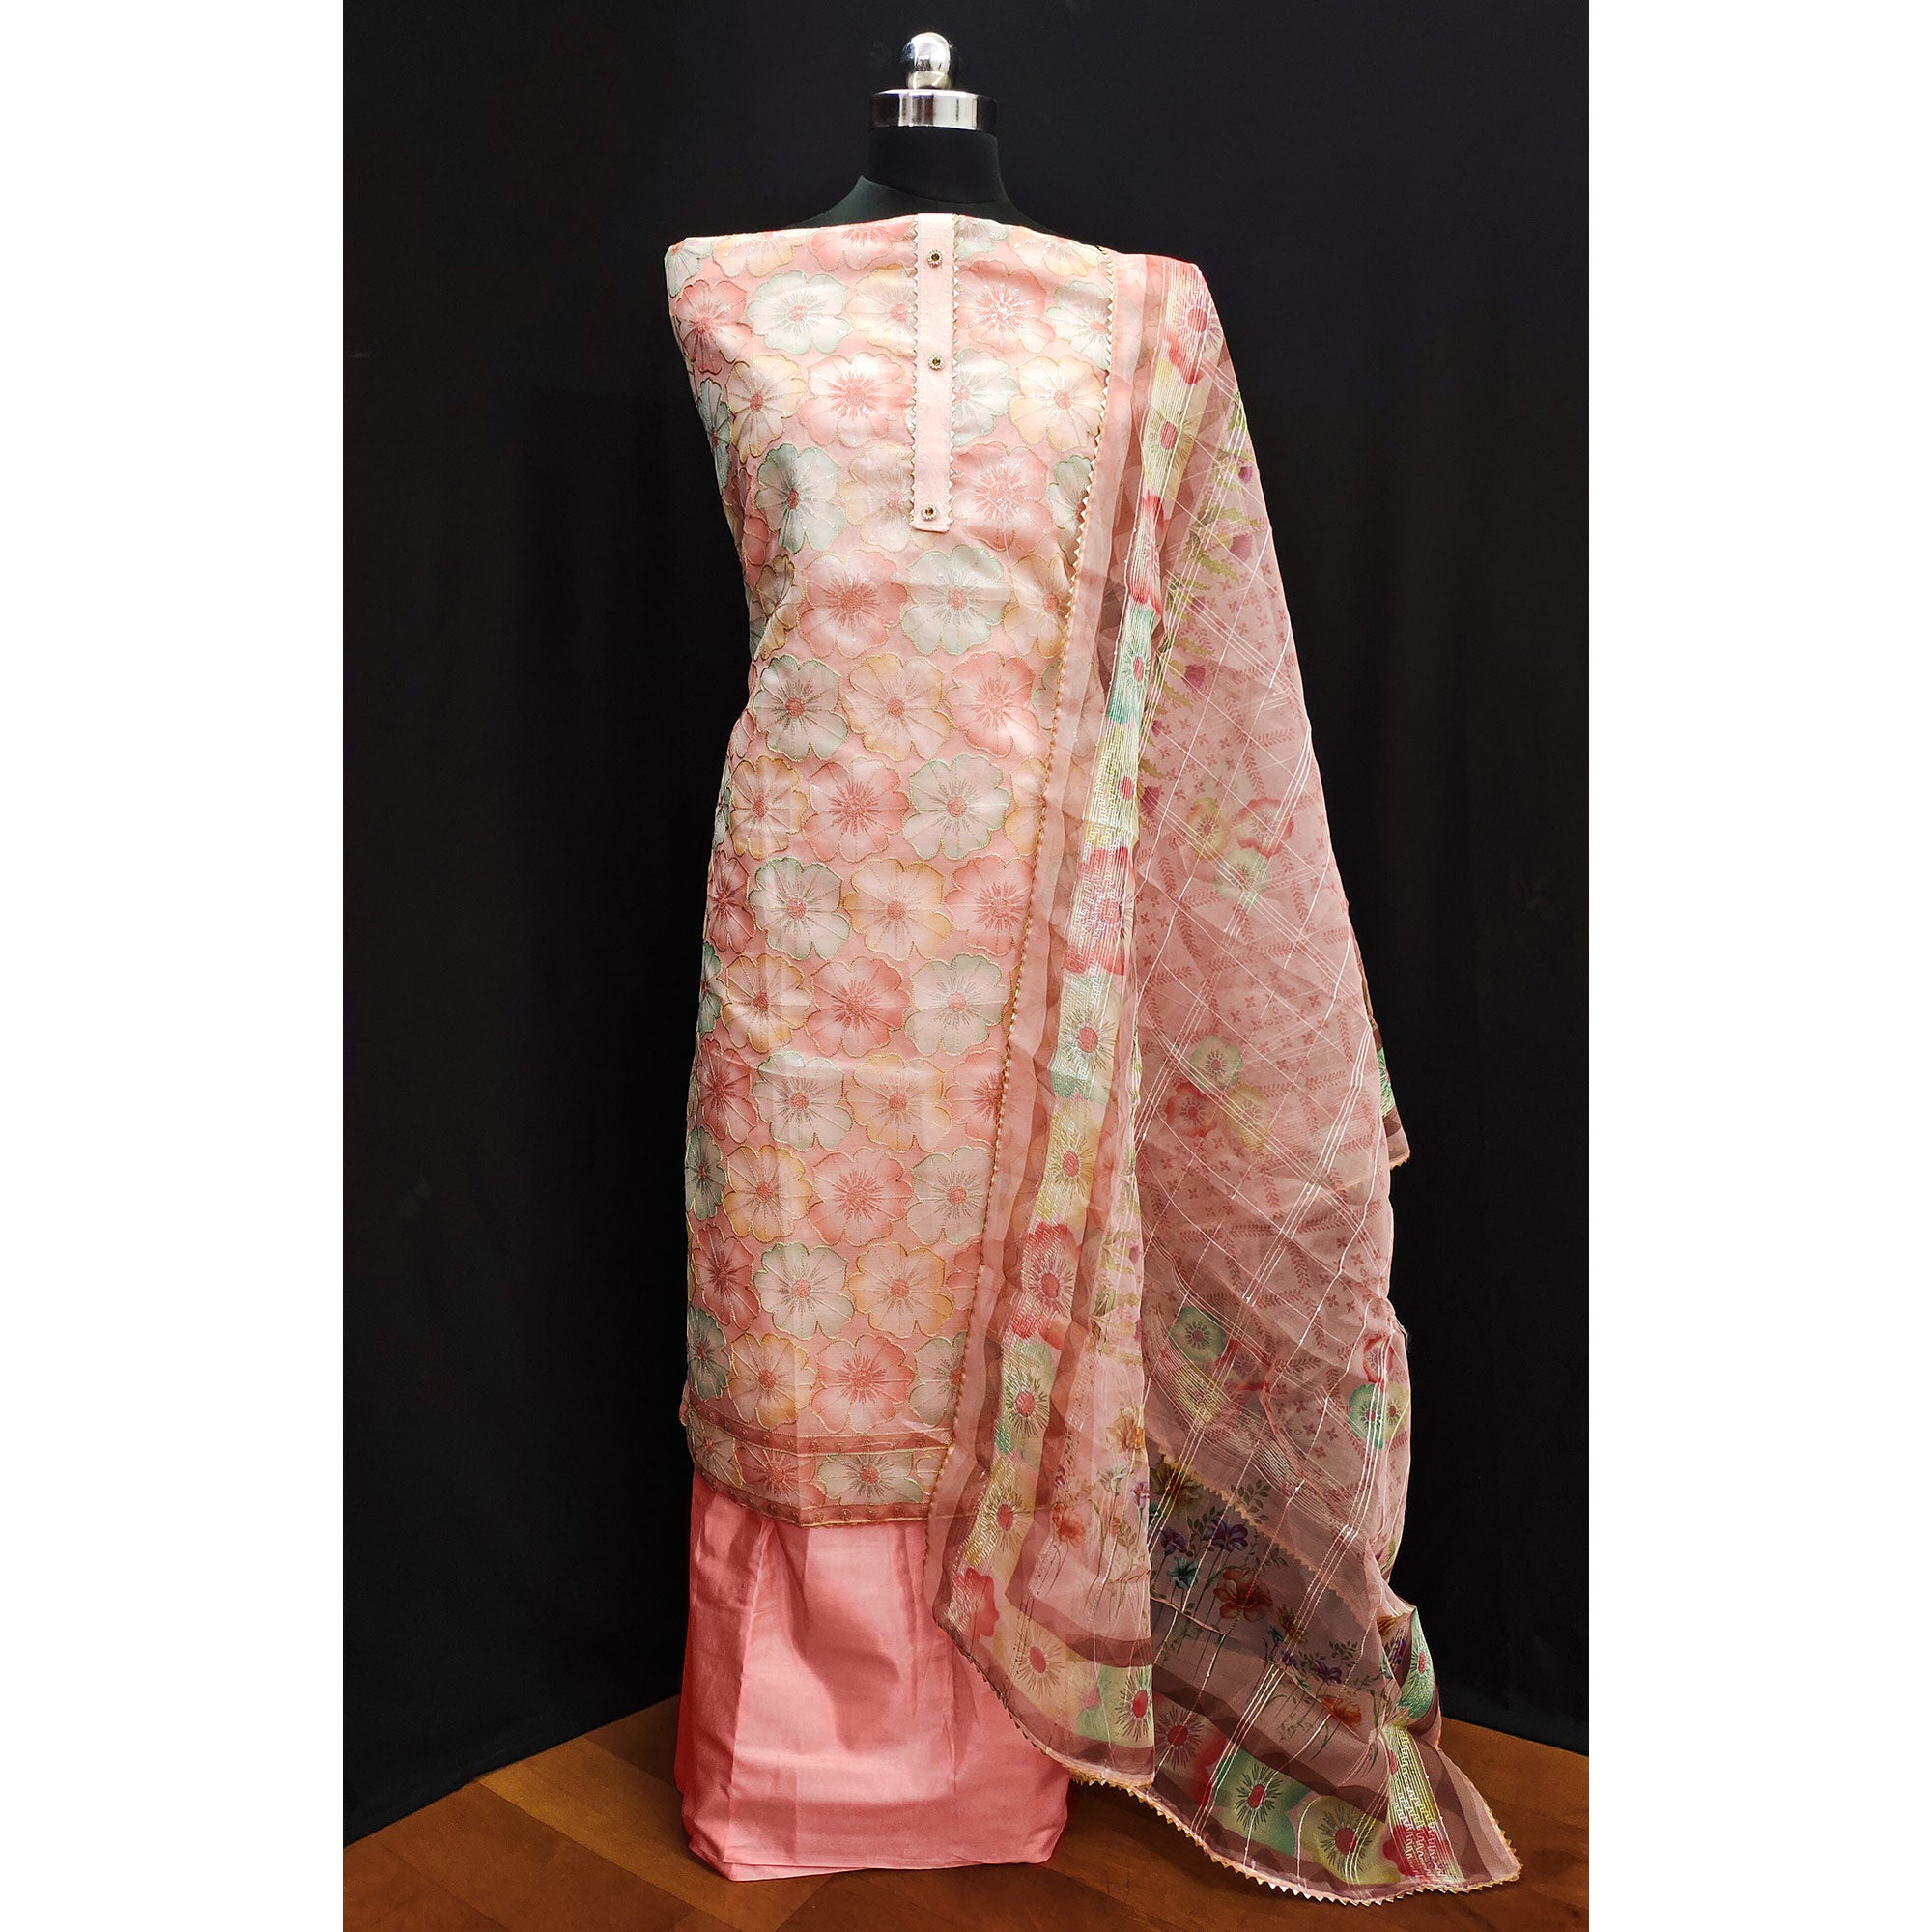 Peach Floral Printed Organza Dress Material